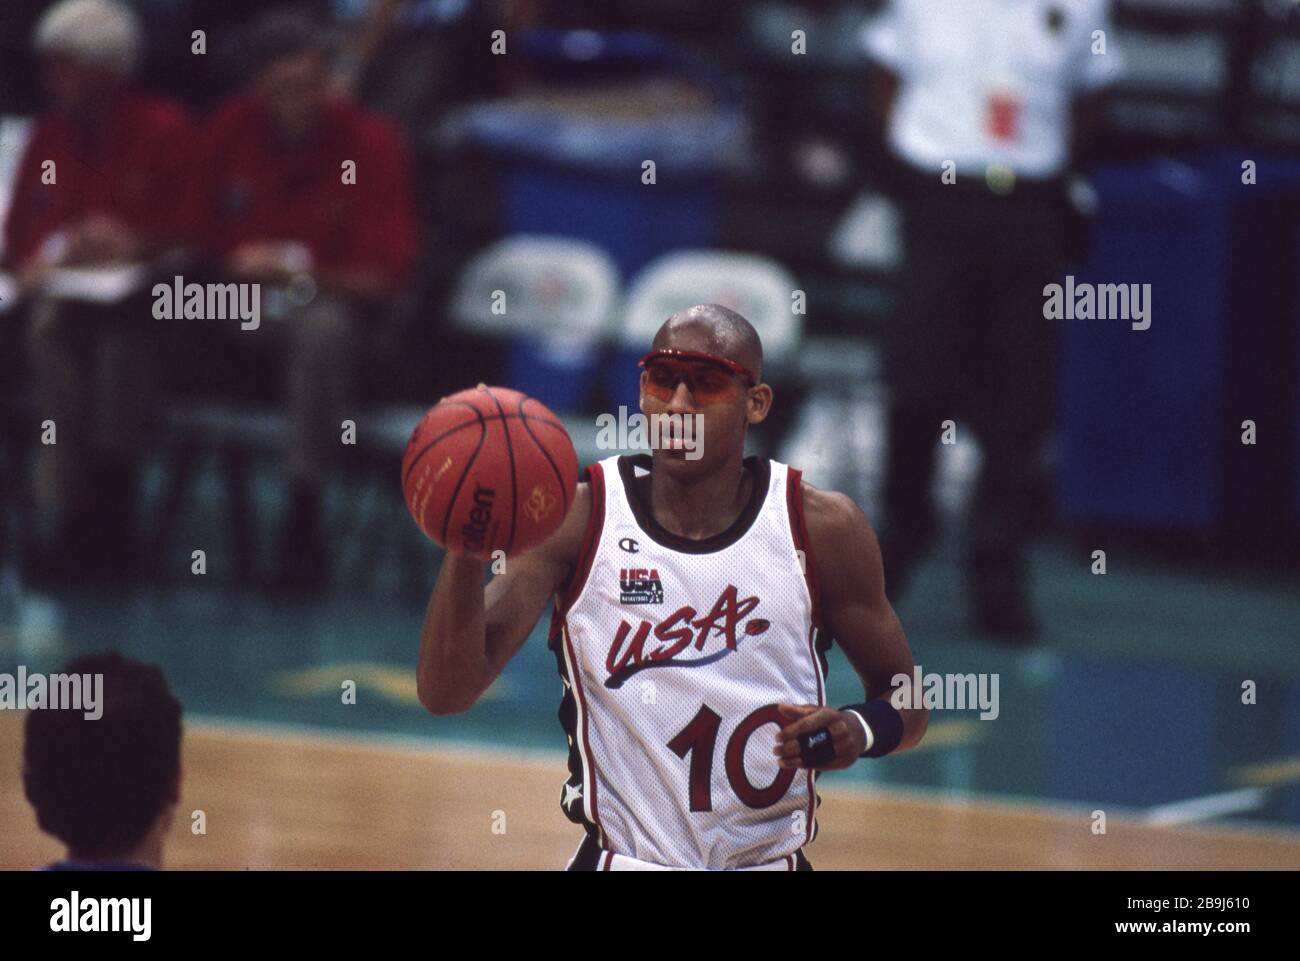 Primero: 22.07.1996 Deporte, baloncesto, hombres, Juegos Olímpicos de  hombres, Juegos Olímpicos de Verano, Atlanta, 96, 1996, fotos antiguas,  EE.UU. Gana la medalla de oro EE.UU. - Argentina 96:68 Reggie Miller,  figura completa,